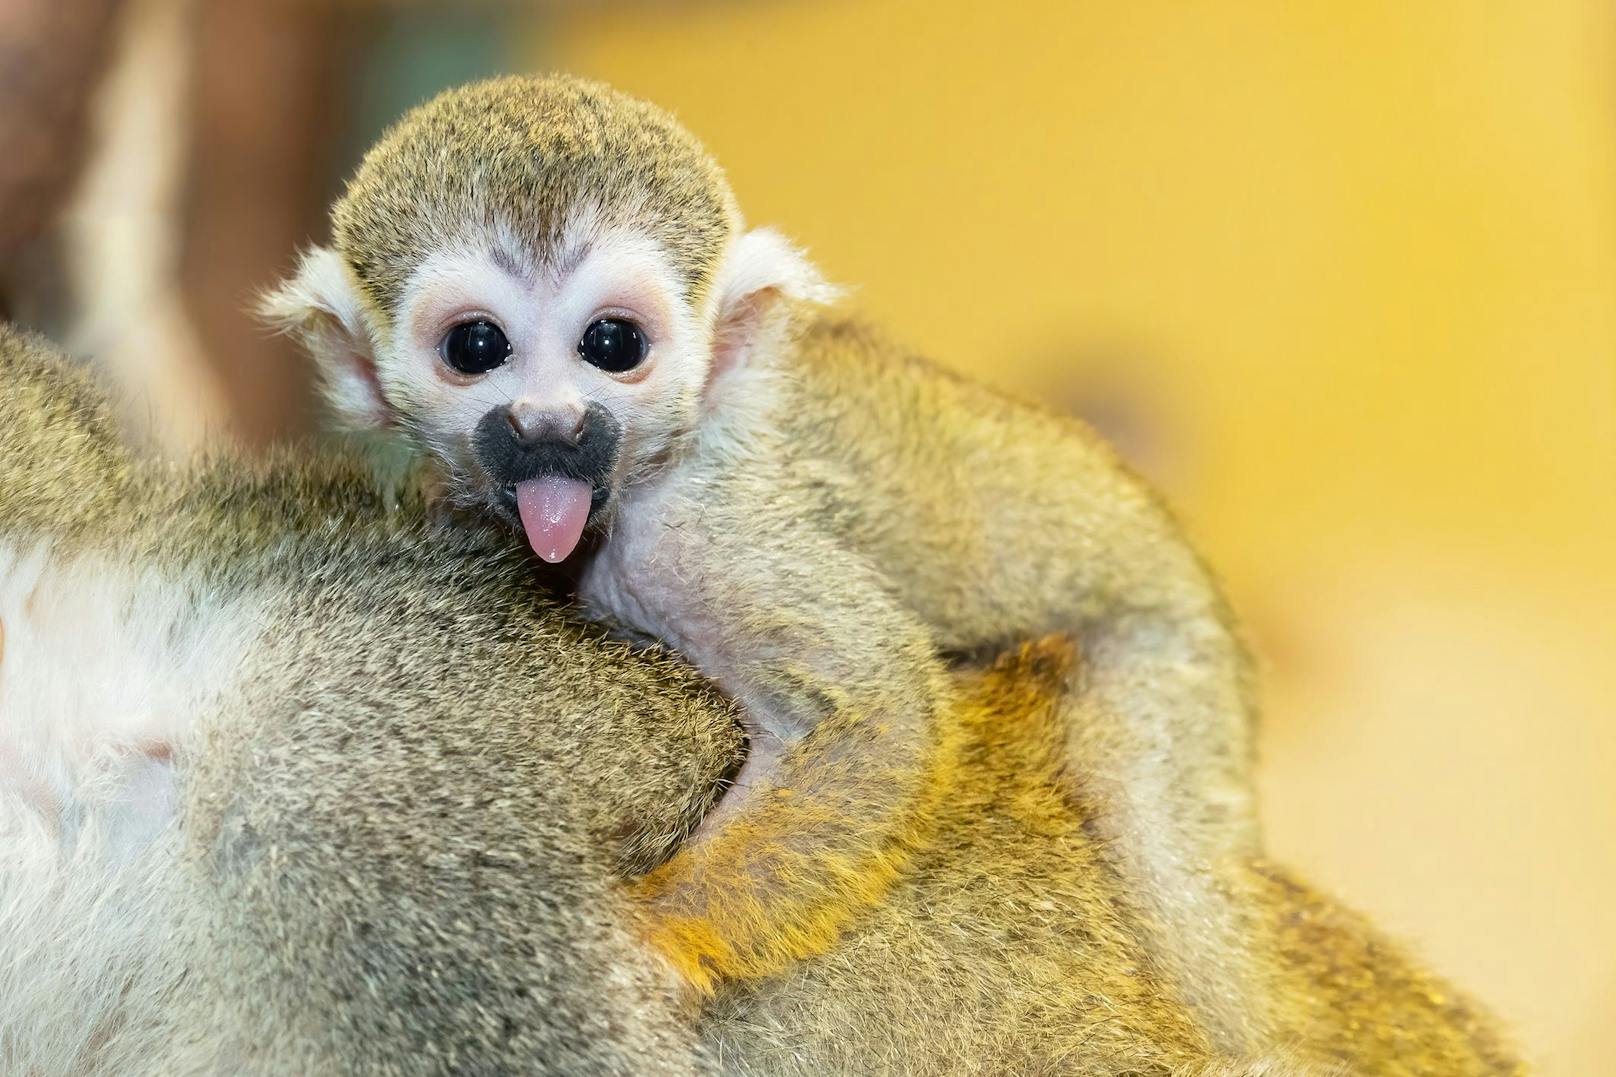 Der englische Name der Affen "Squirrel monkey" bezieht sich auf das Geschick und die Wendigkeit auf den Bäumen - wie ein Eichhörnchen eben. 